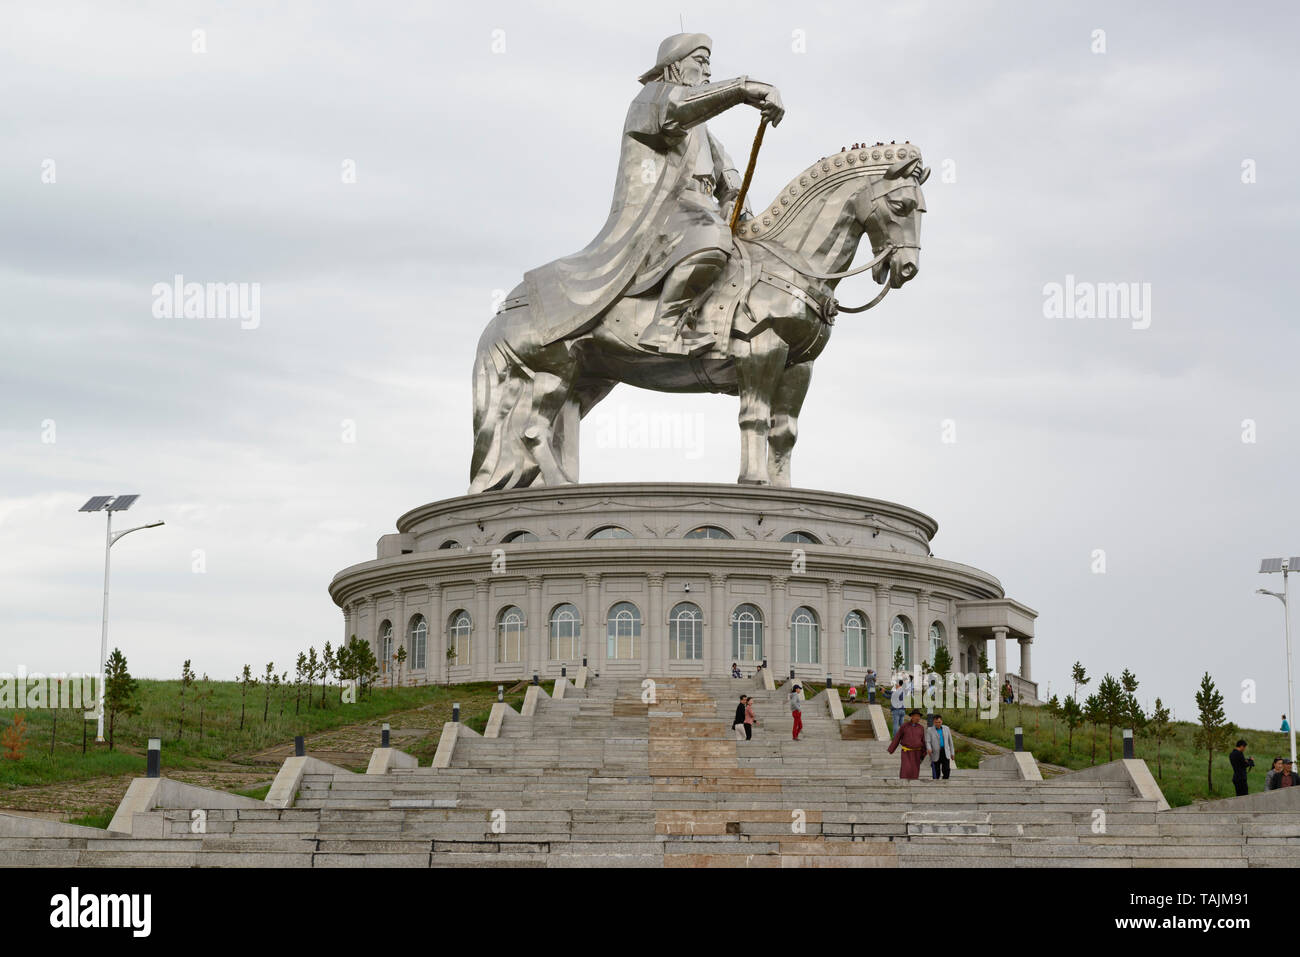 La Genghis Khan Statue équestre, partie de la Statue de Gengis Khan, complexe 54 km à l'est d'Oulan-Bator, Mongolie. Banque D'Images